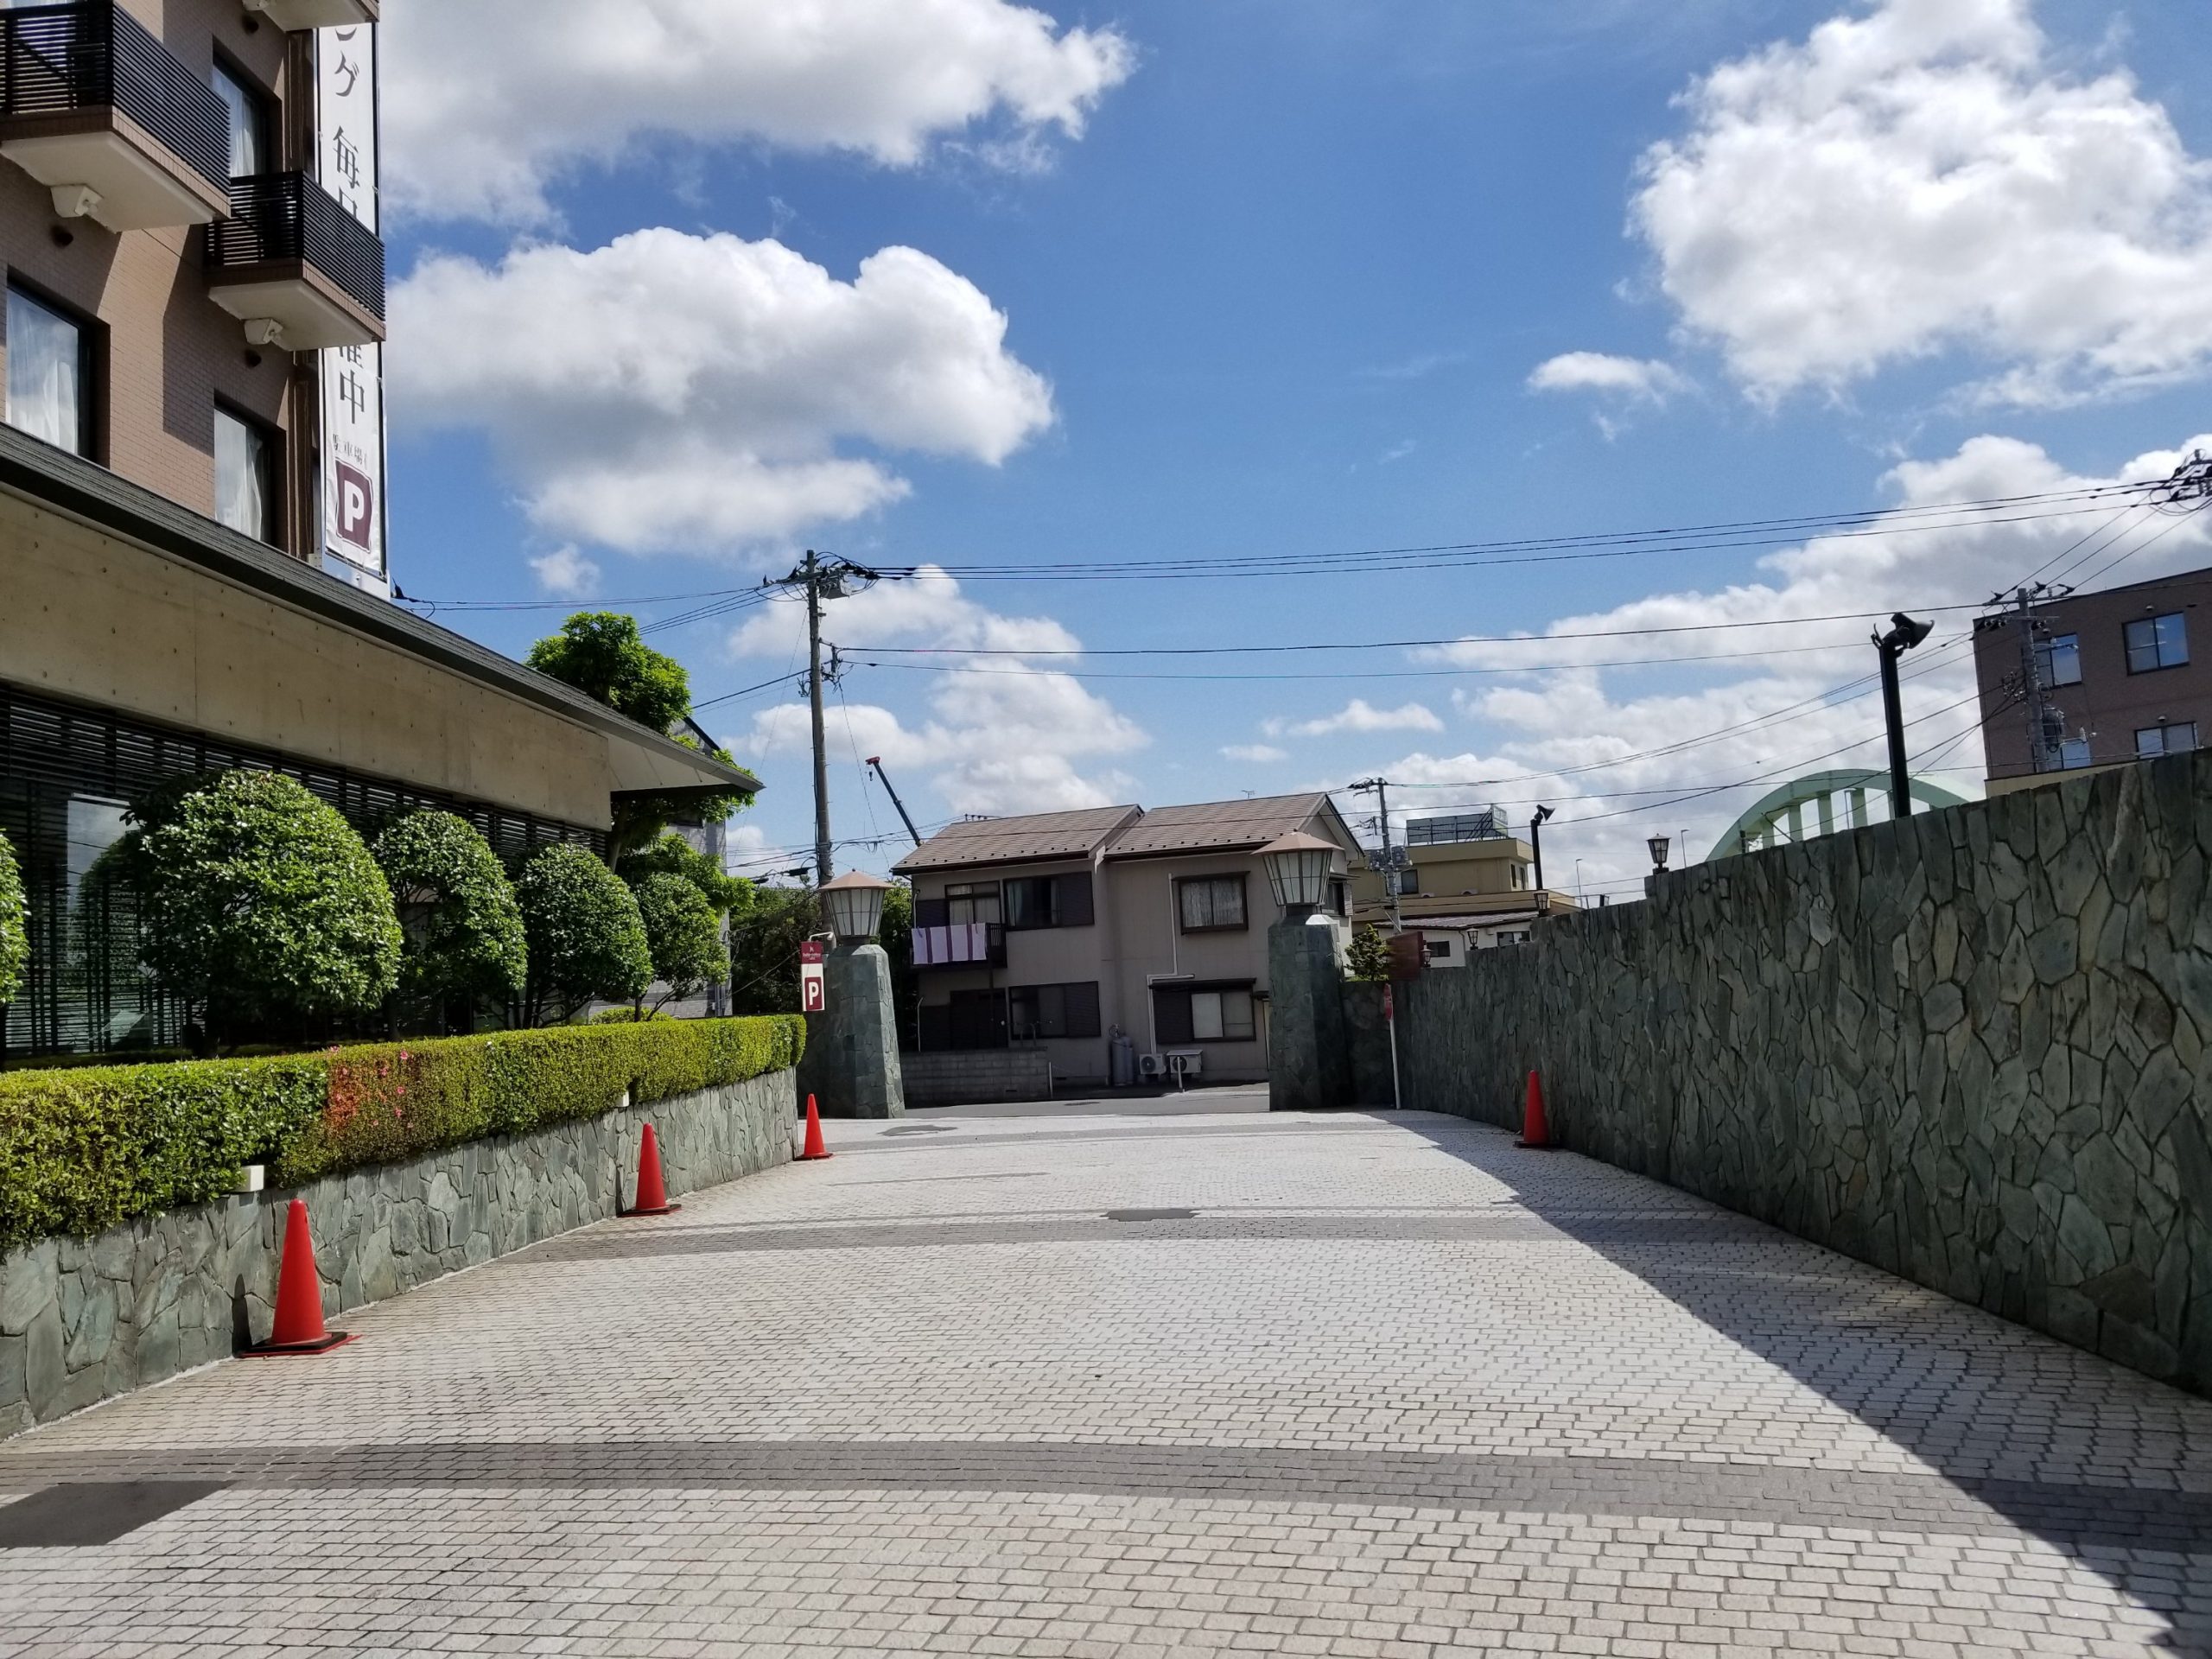 Transitting in Japan (part 4): Staying near Narita